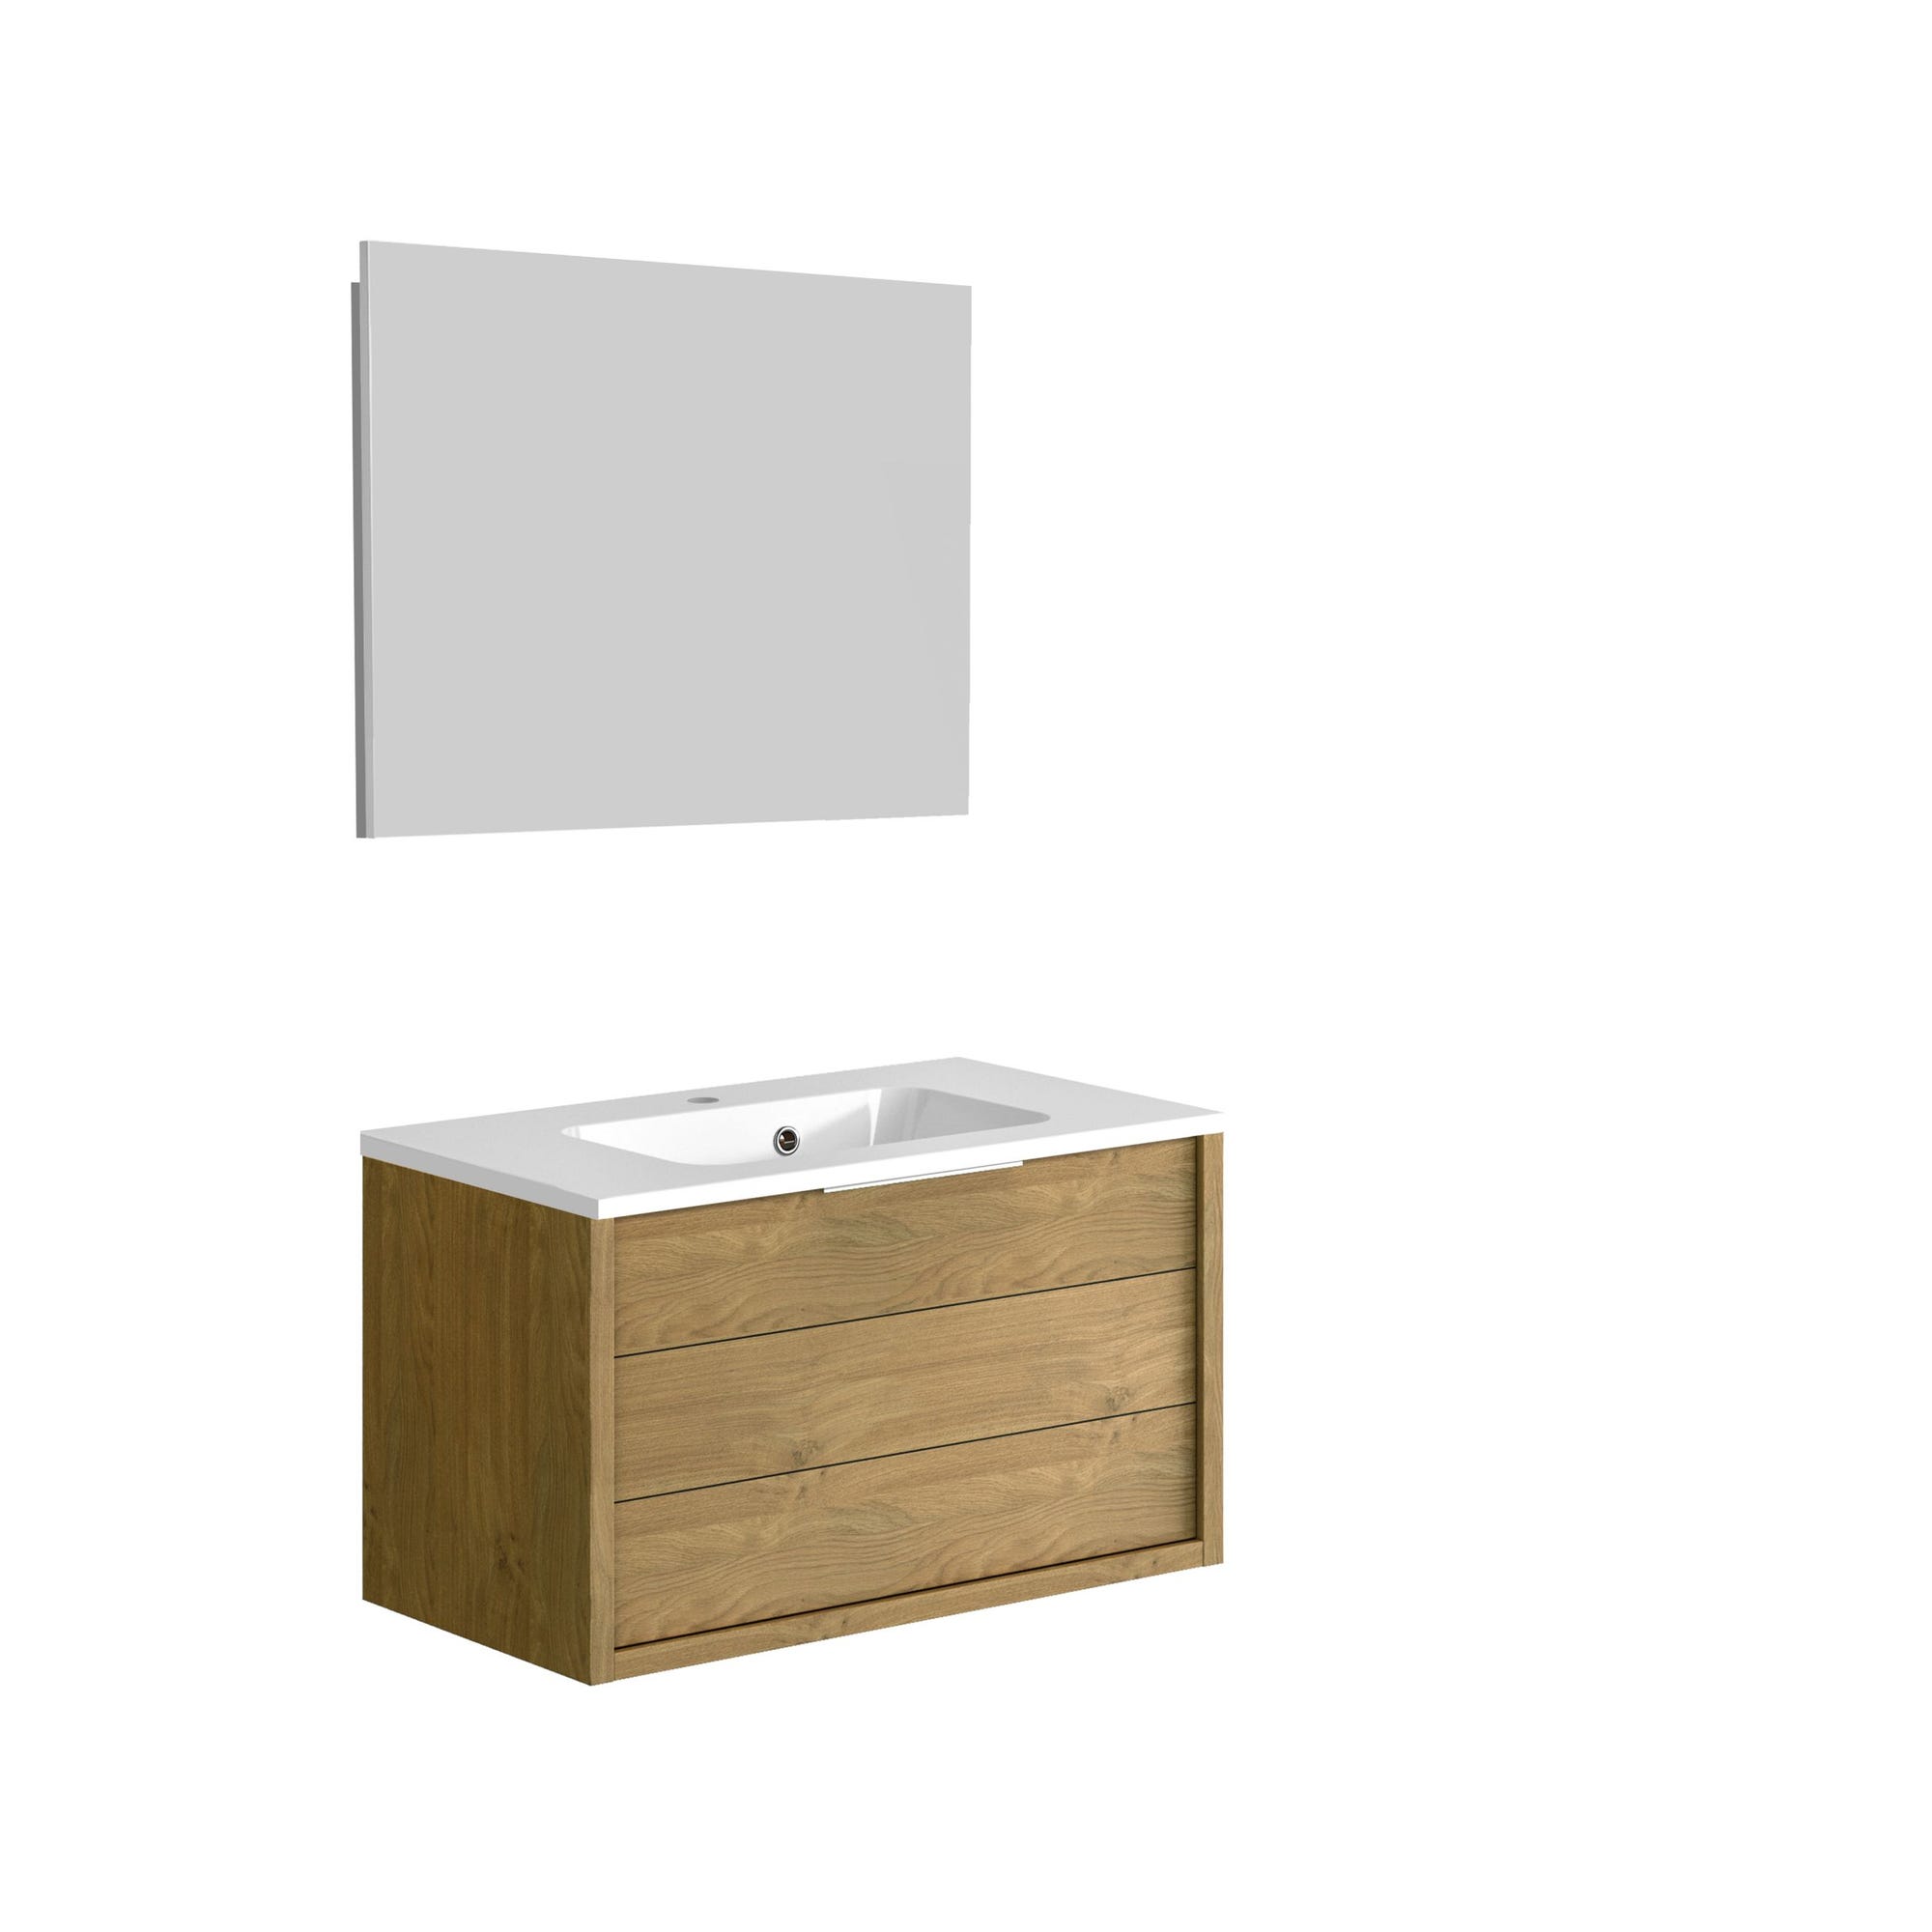 Meuble de salle de bain SORENTO couleur chêne clair 80 cm + plan vasque STYLE + miroir DEKO 80x60cm 0